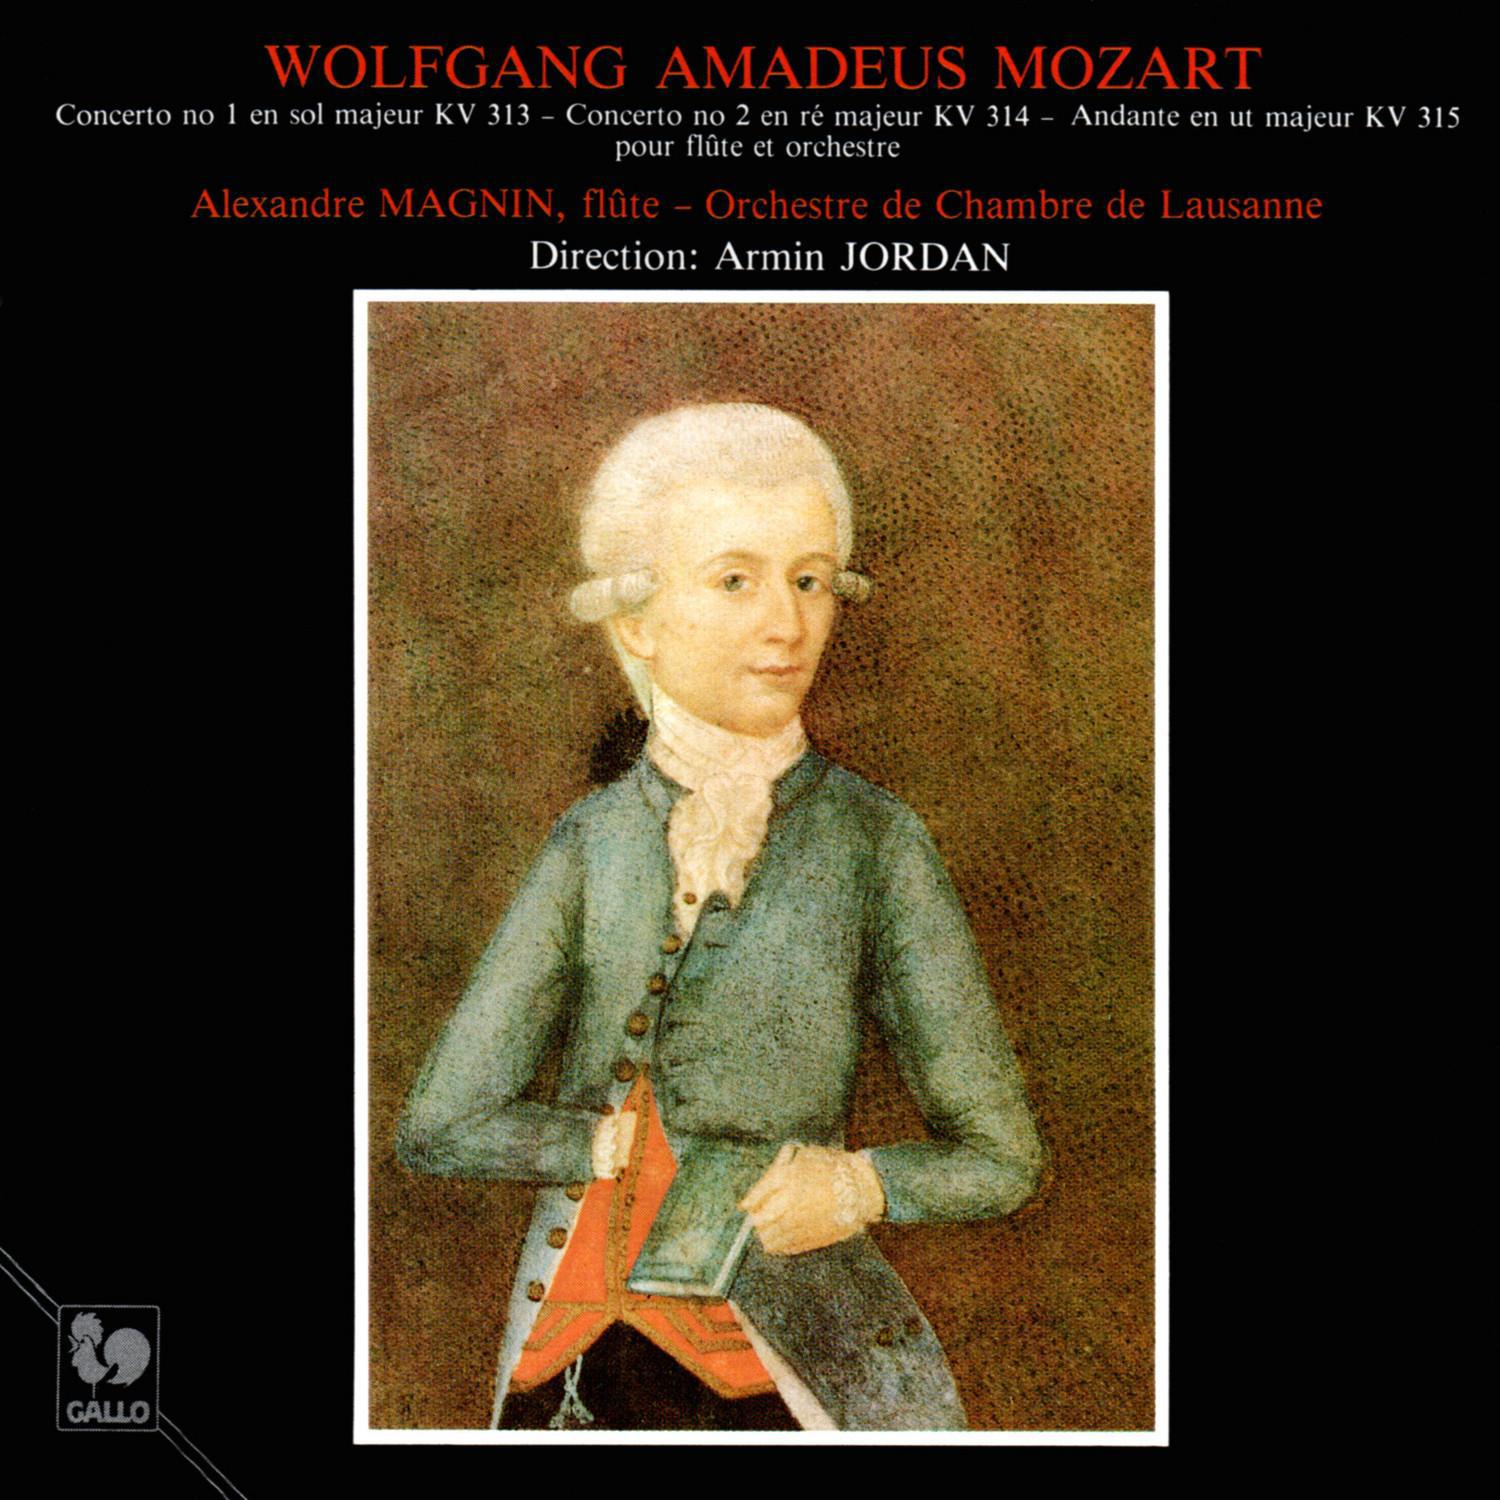 Mozart: Flute Concerto No. 1 in G Major, K. 313 - Flute Concerto No. 2 in D Major, K. 314 - Andante in C Major, K. 315